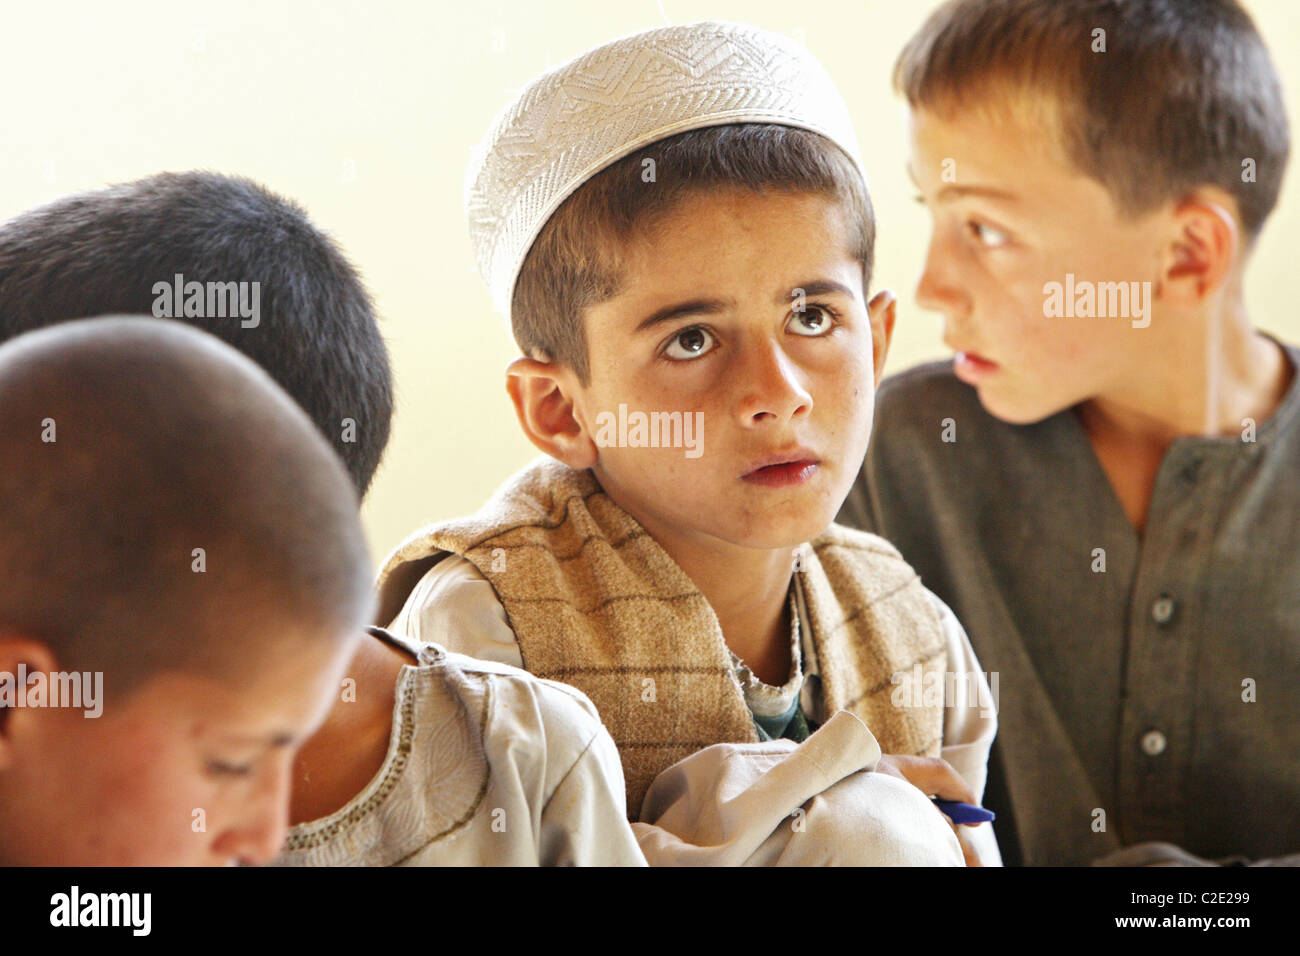 Children at school, Kunduz, Afghanistan Stock Photo